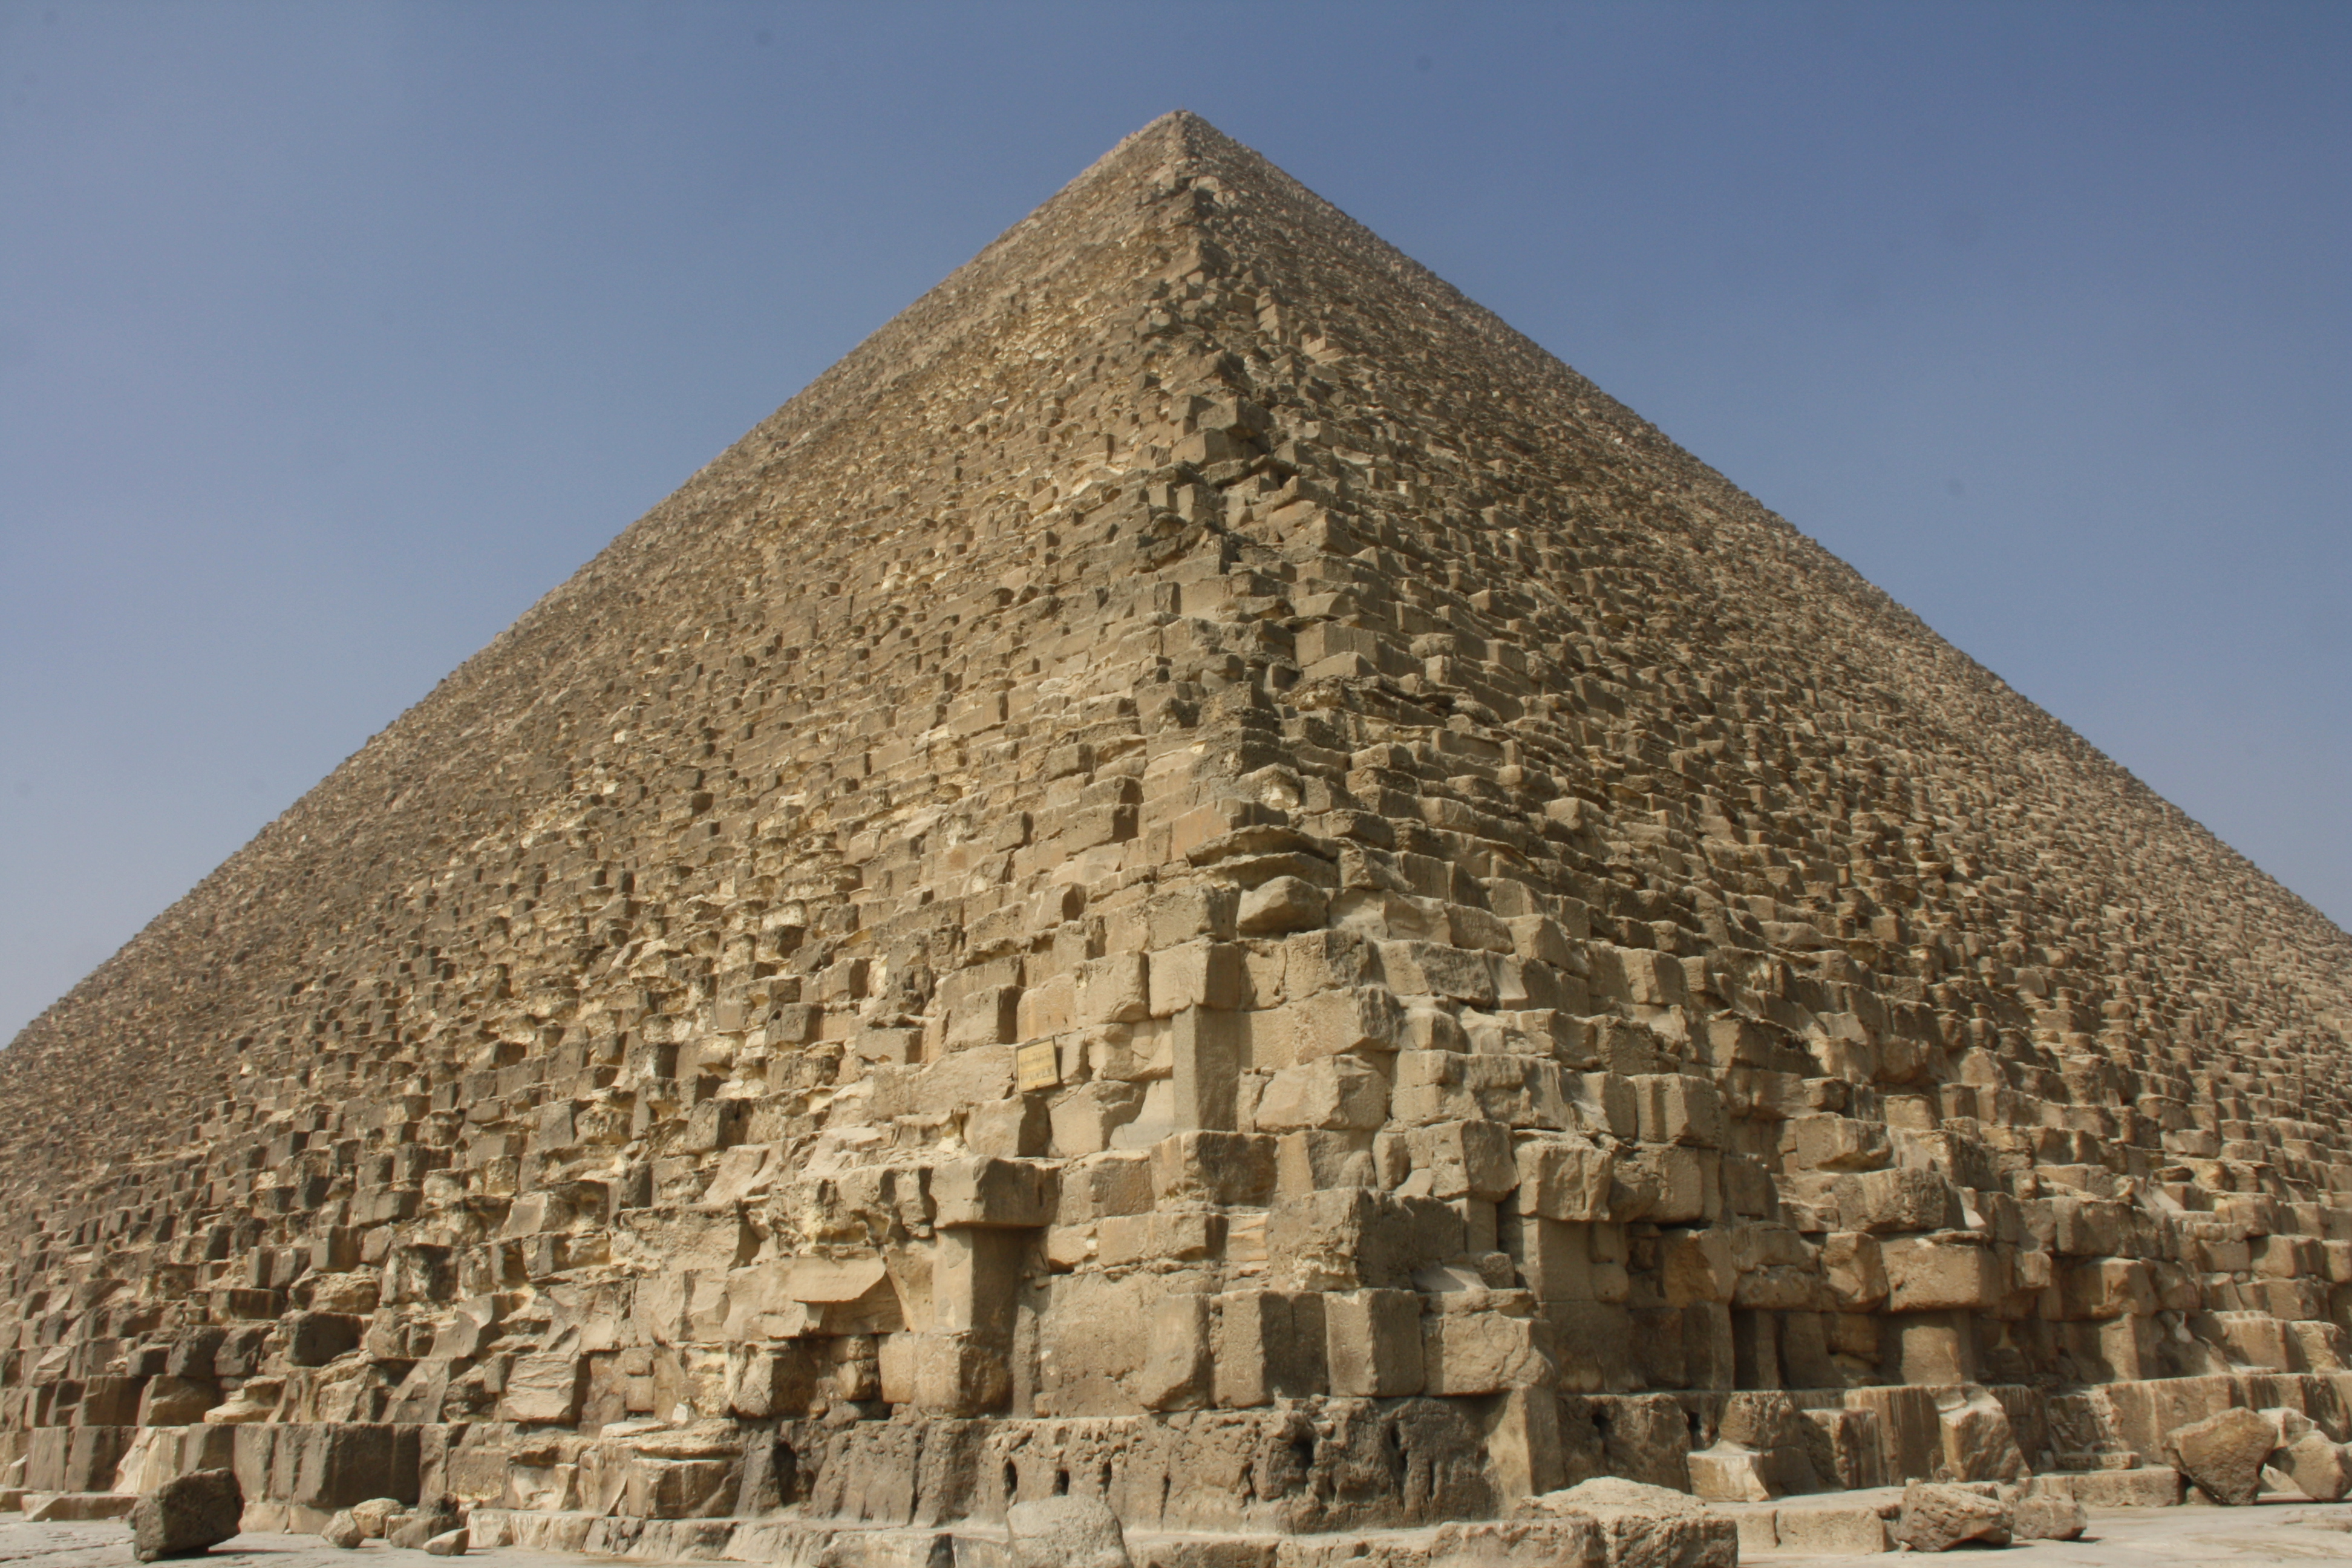 Скачать обои Великая Пирамида Гизы на телефон бесплатно